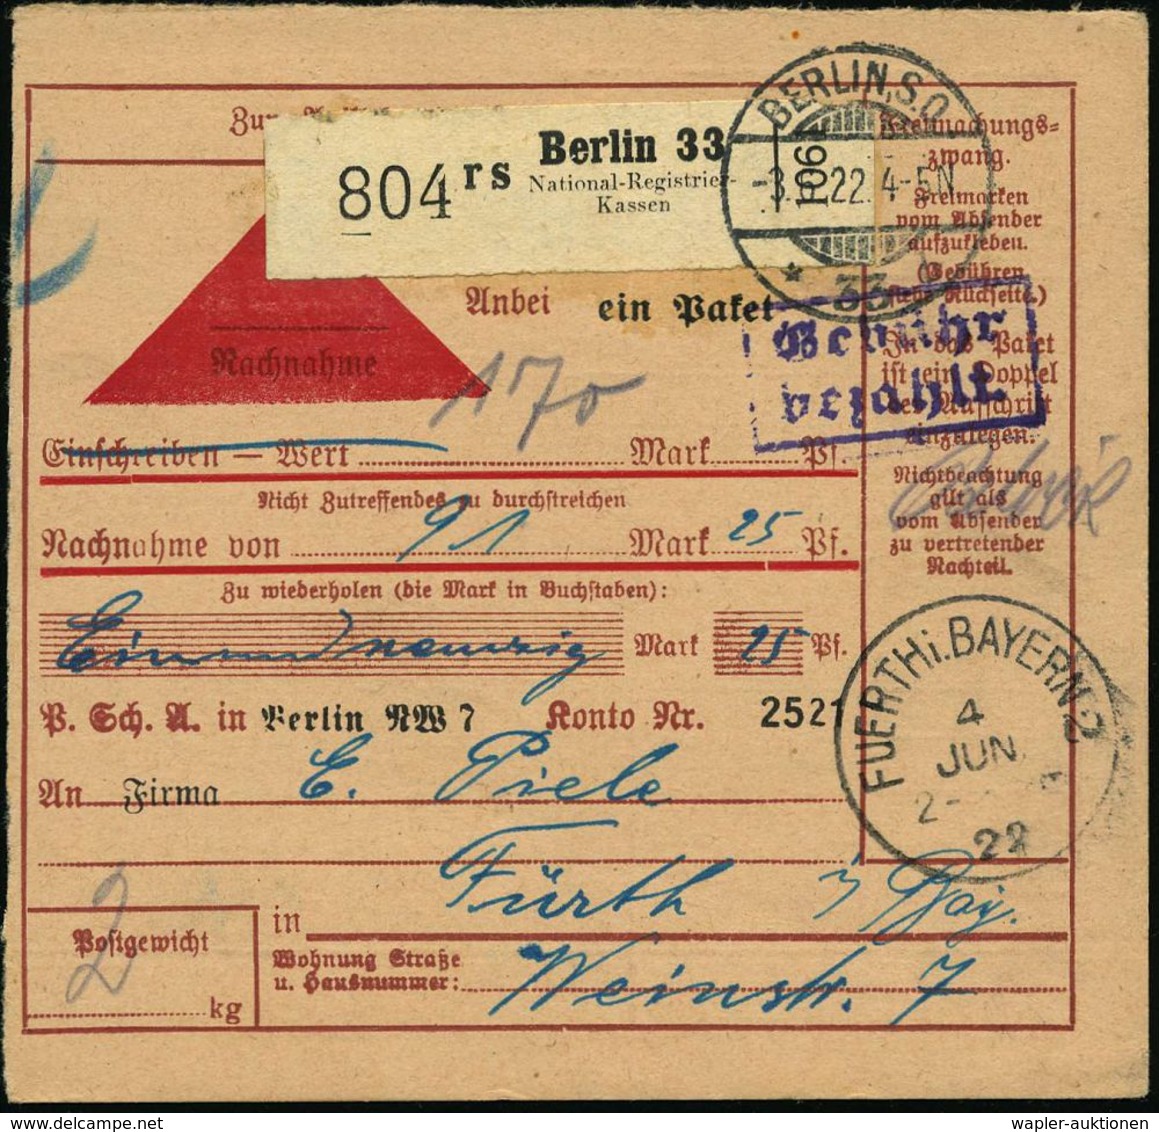 NUMISPHILATELIE / GELDSCHEINE / MÜNZEN : Berlin 33/ Rs/ National-Registrier-/ Kassen 1922 (3.6.) Selbstbucher-Paketzette - Non Classés